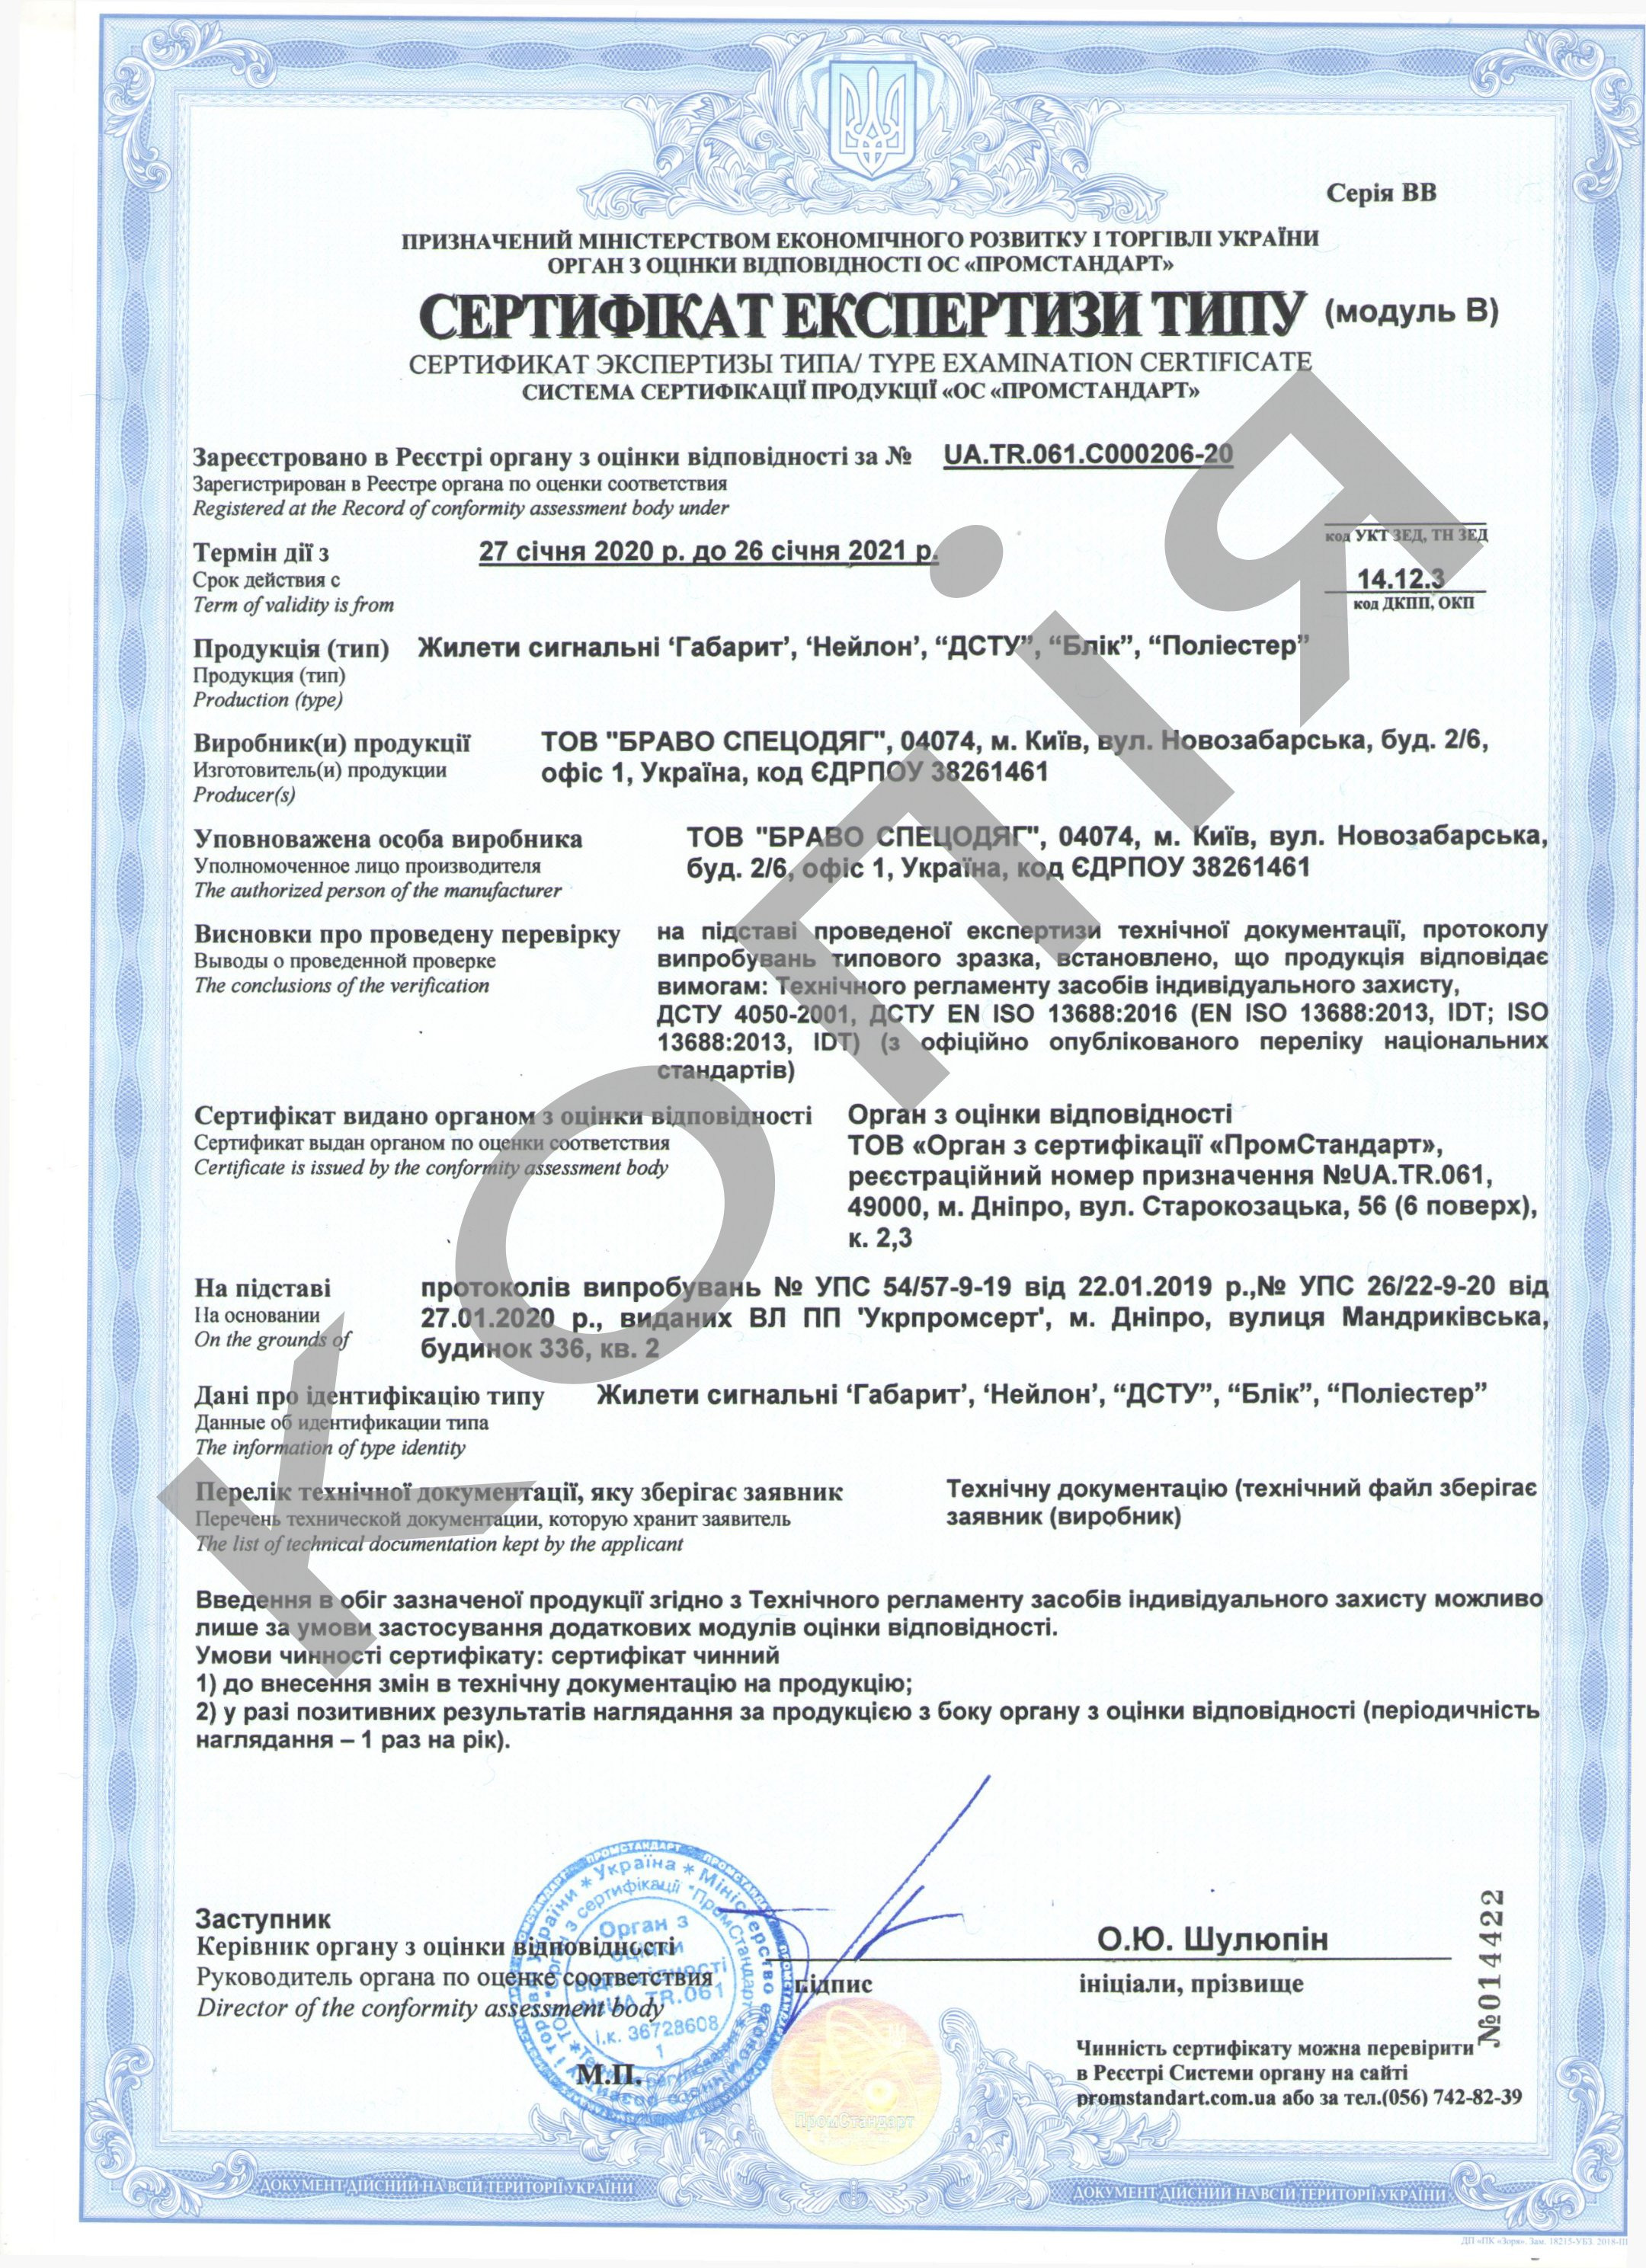 Сертифікат відповідності - доповнення